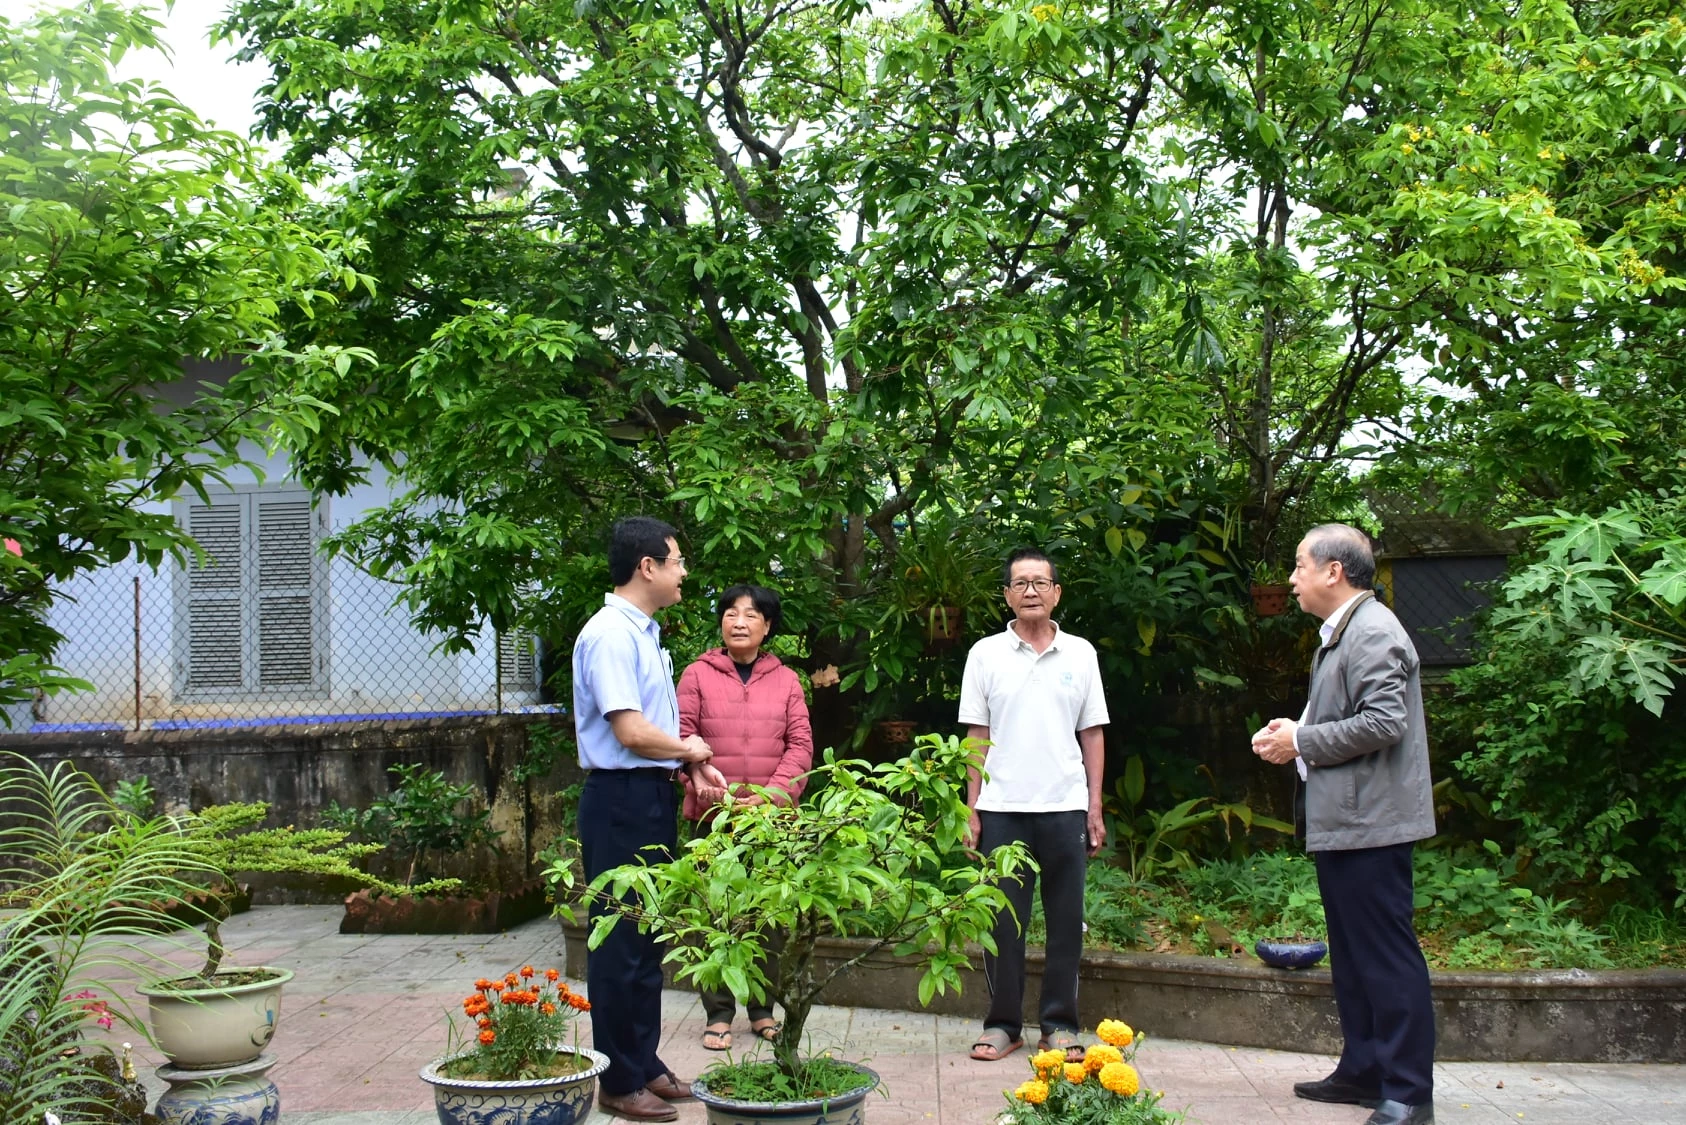 Chủ tịch UBND tỉnh Thừa Thiên Huế Phan Ngọc Thọ đến thăm các hộ dân trồng mai vàng trong khu vực Nội thành Huế.